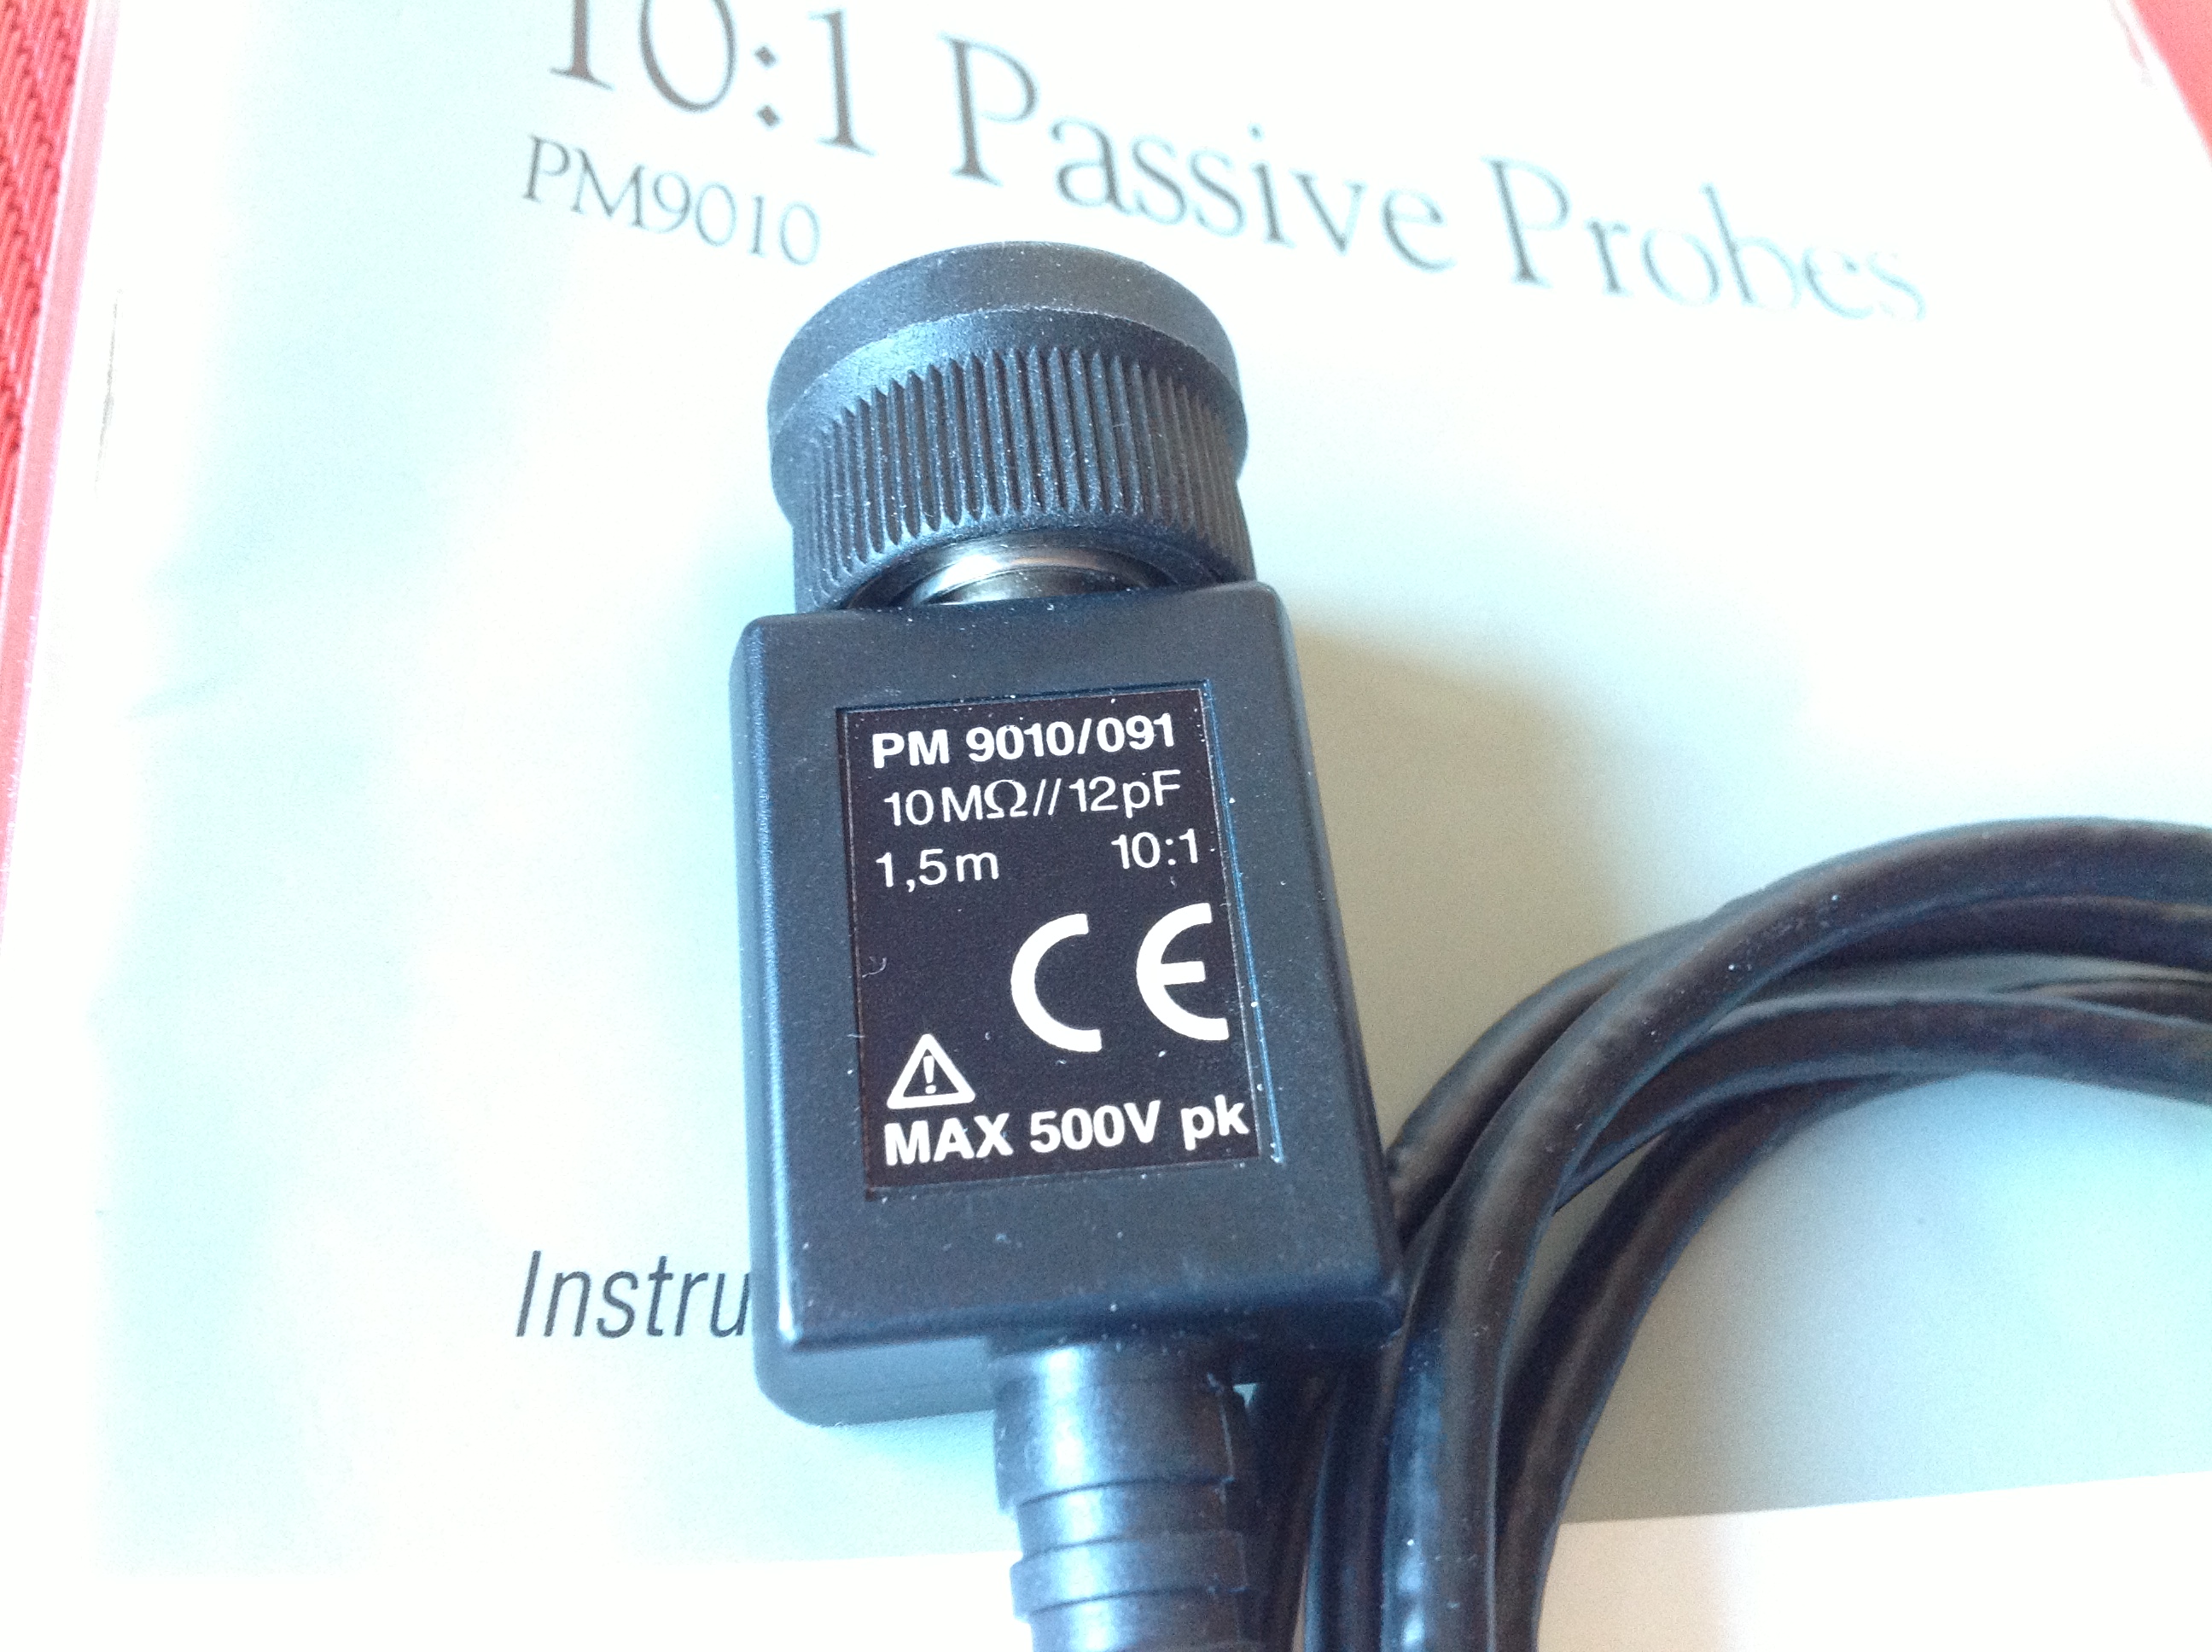 Fluke Tastkopf 10:1 Passive Probe PM 9010/091